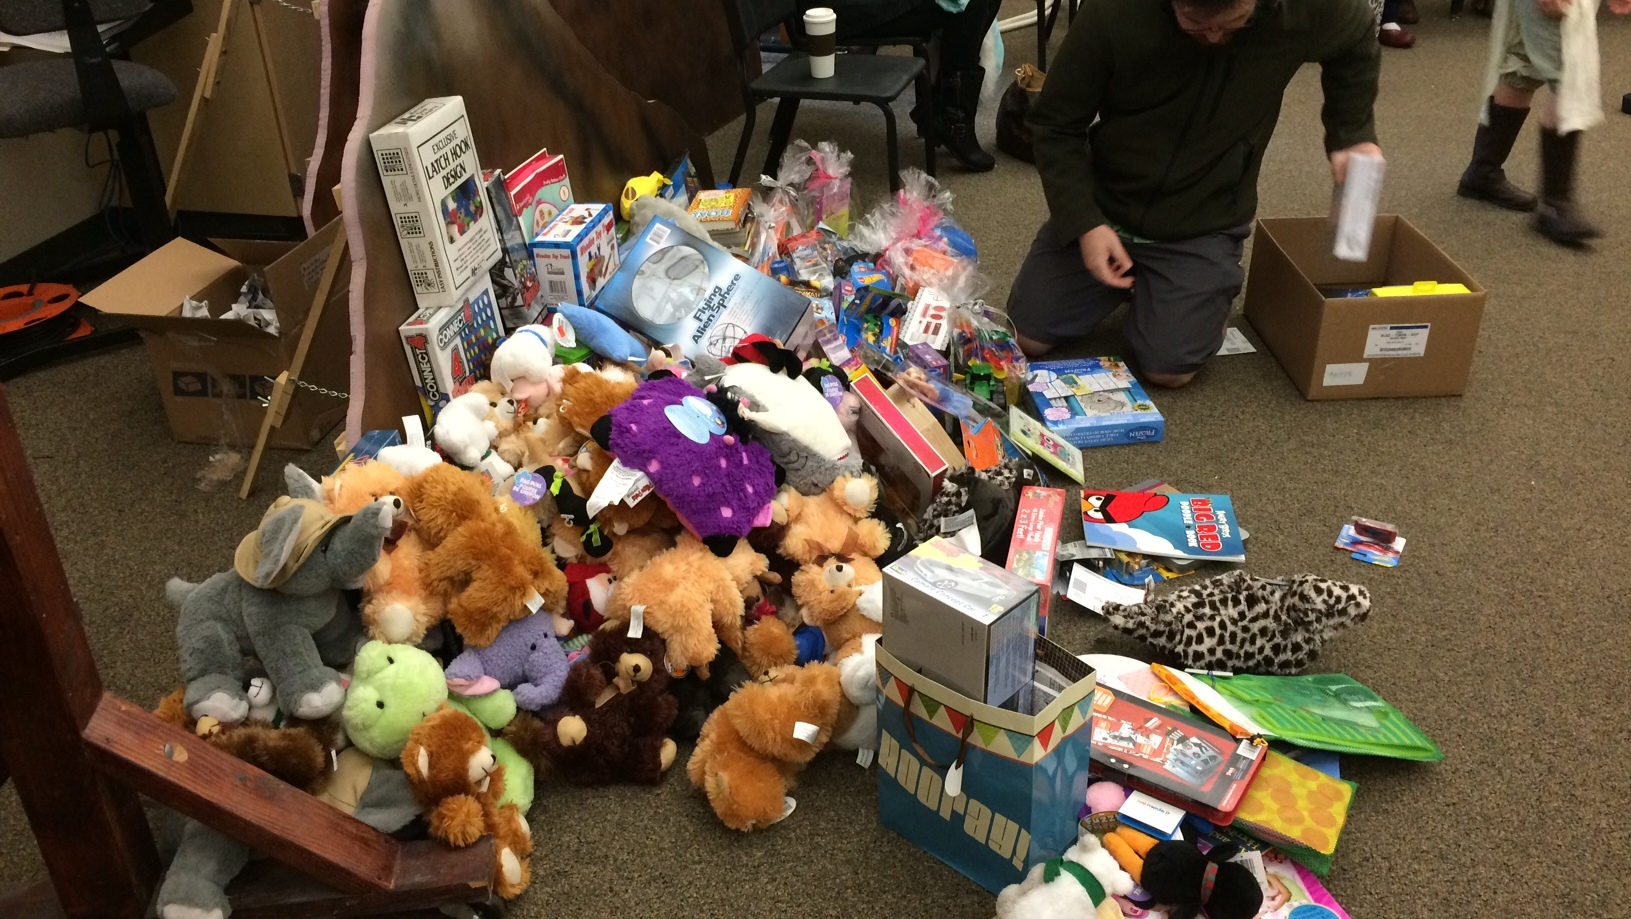 kgw.com | Hillsboro girl donates gifts to children's hospital1631 x 919